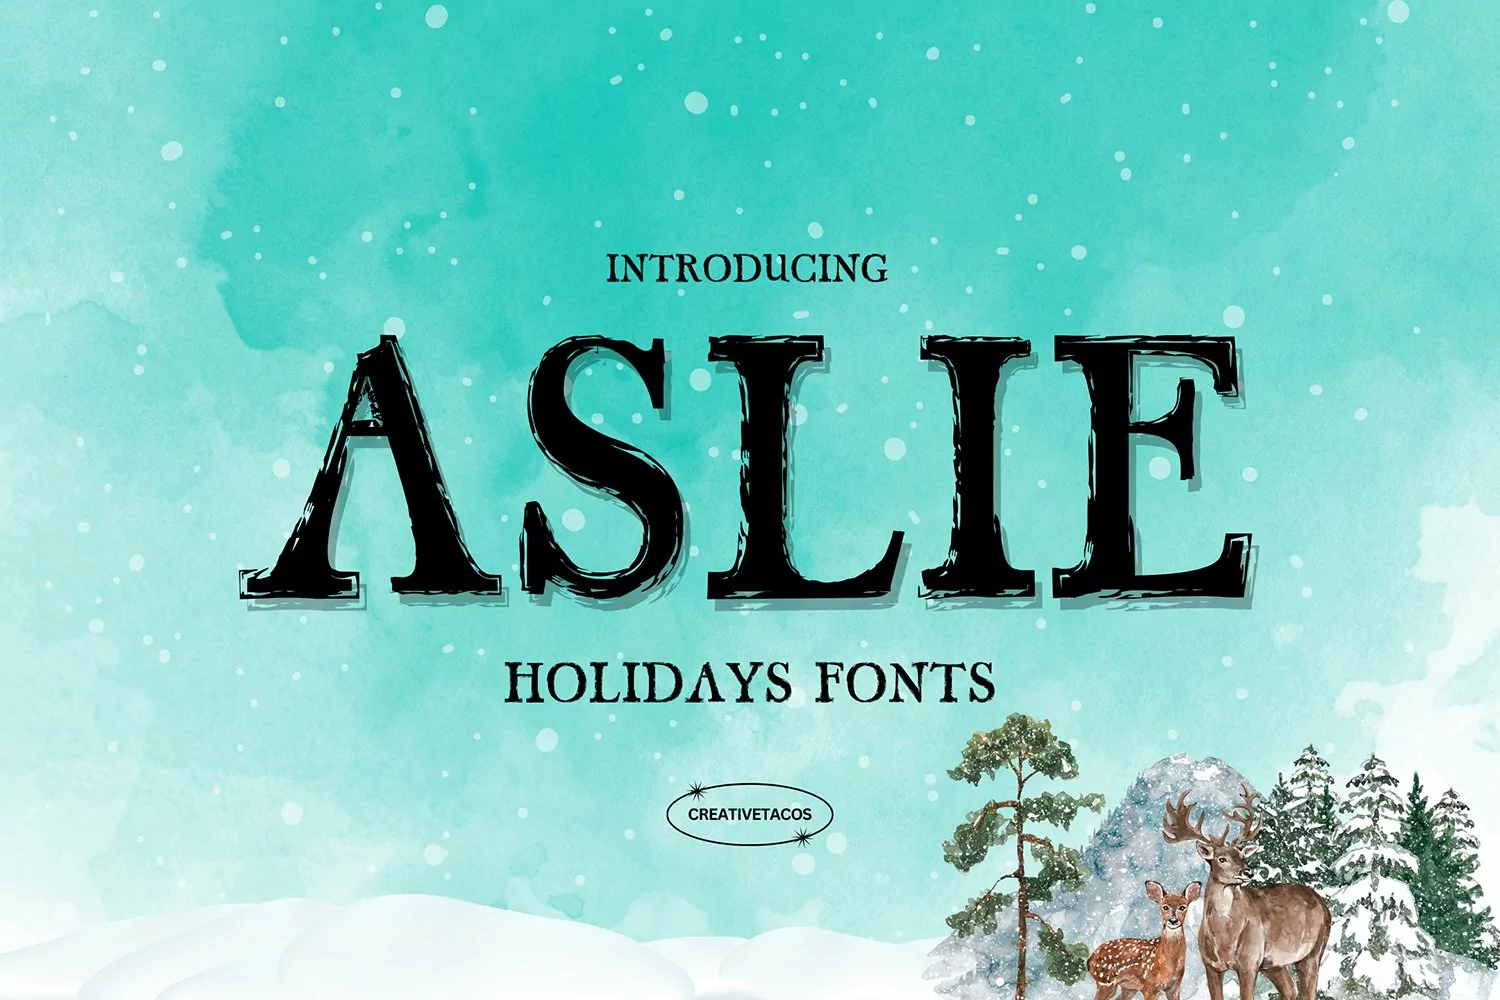 Aslie Holidays Font